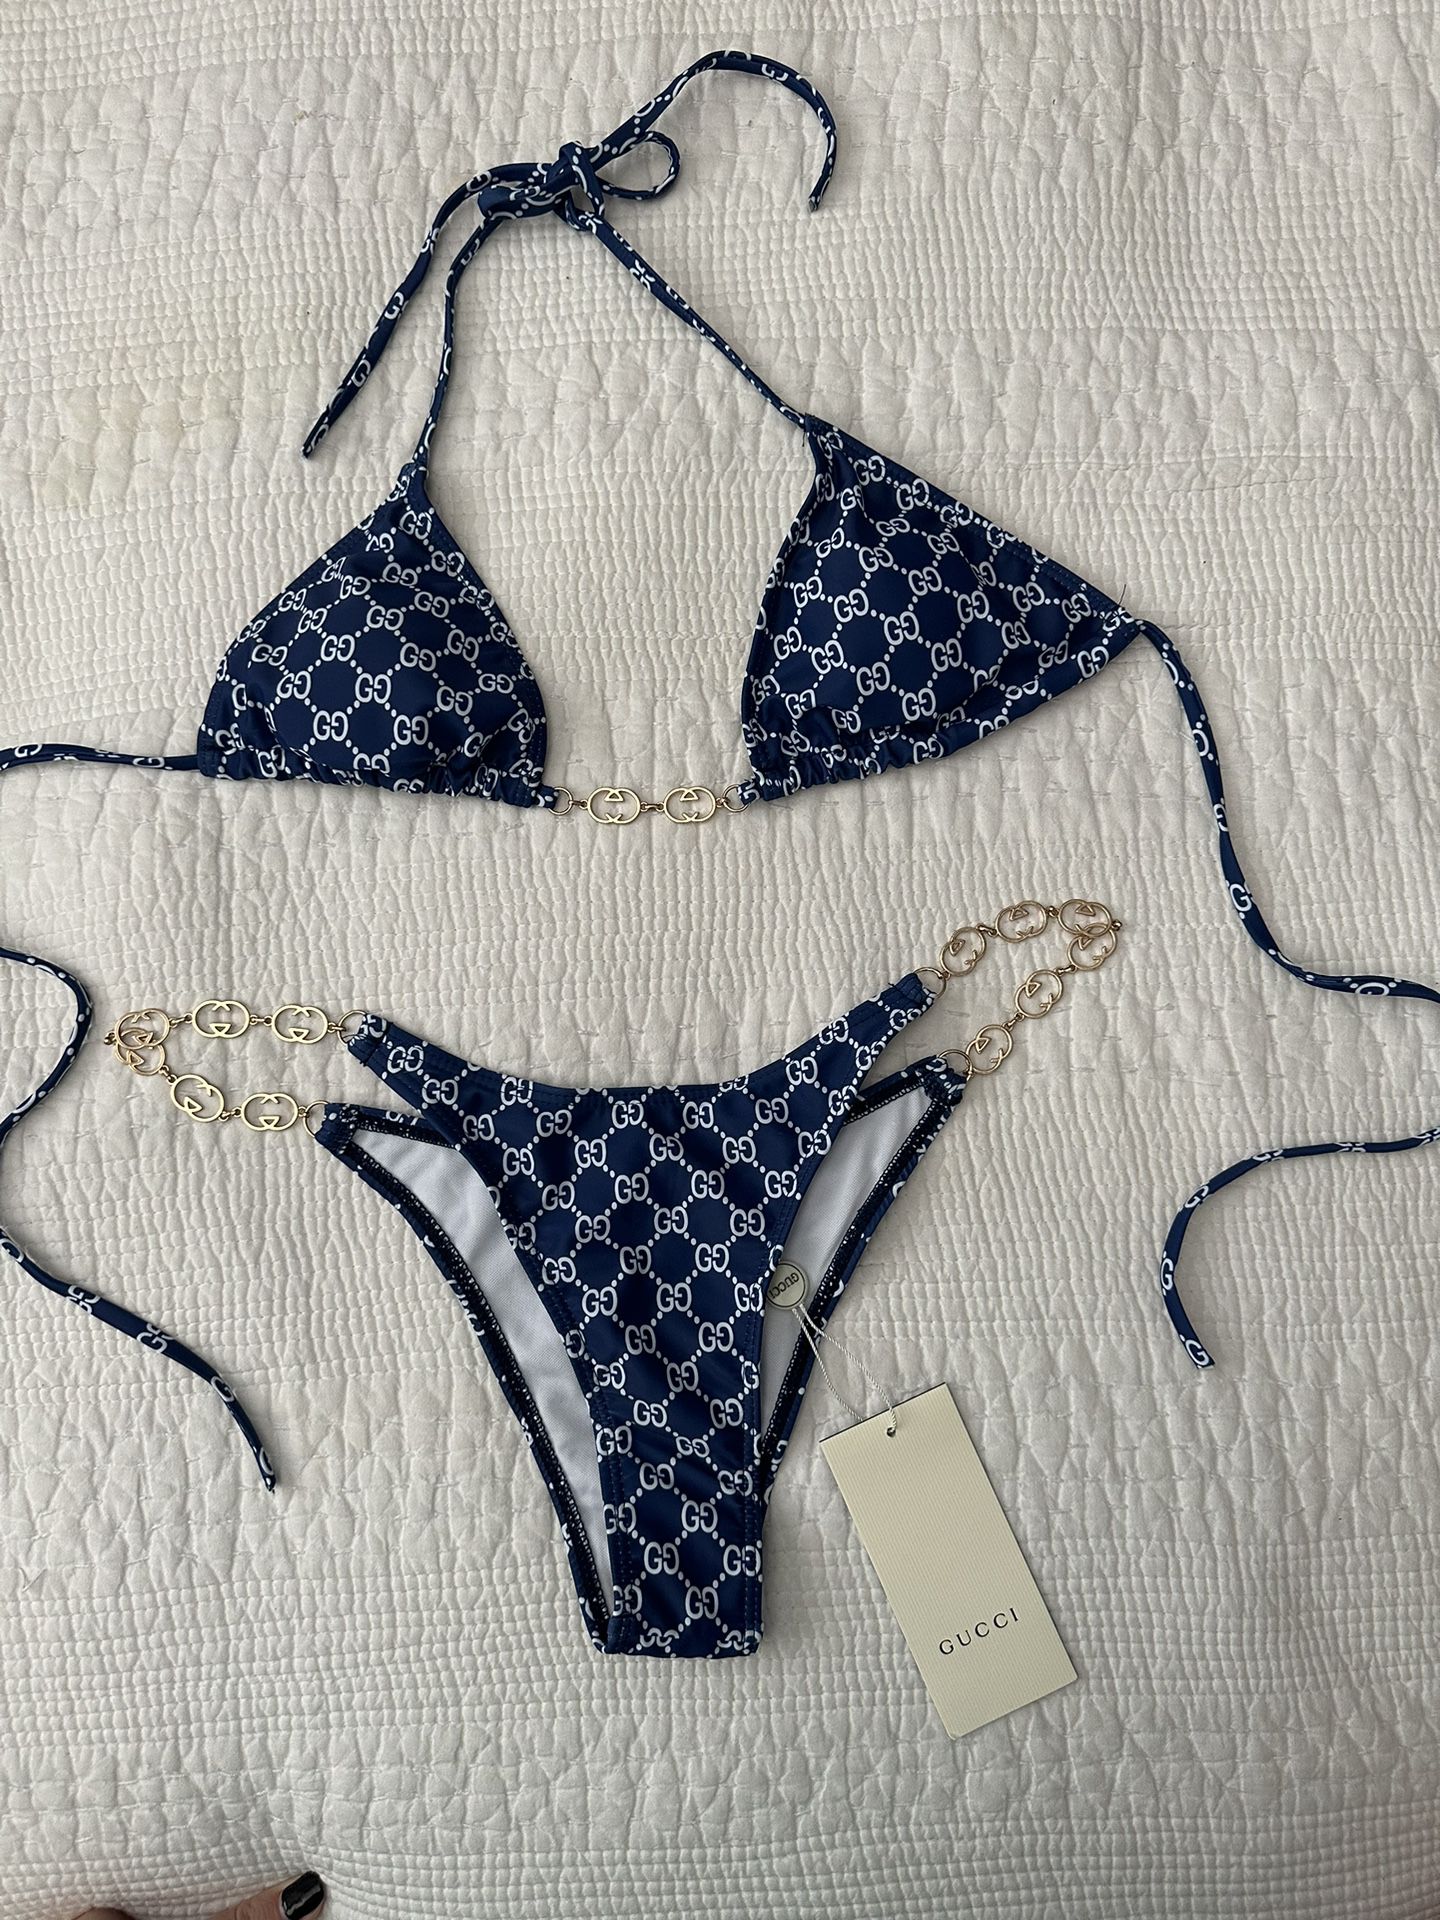 Louis Vuitton Bikini for Sale in Grapevine, TX - OfferUp